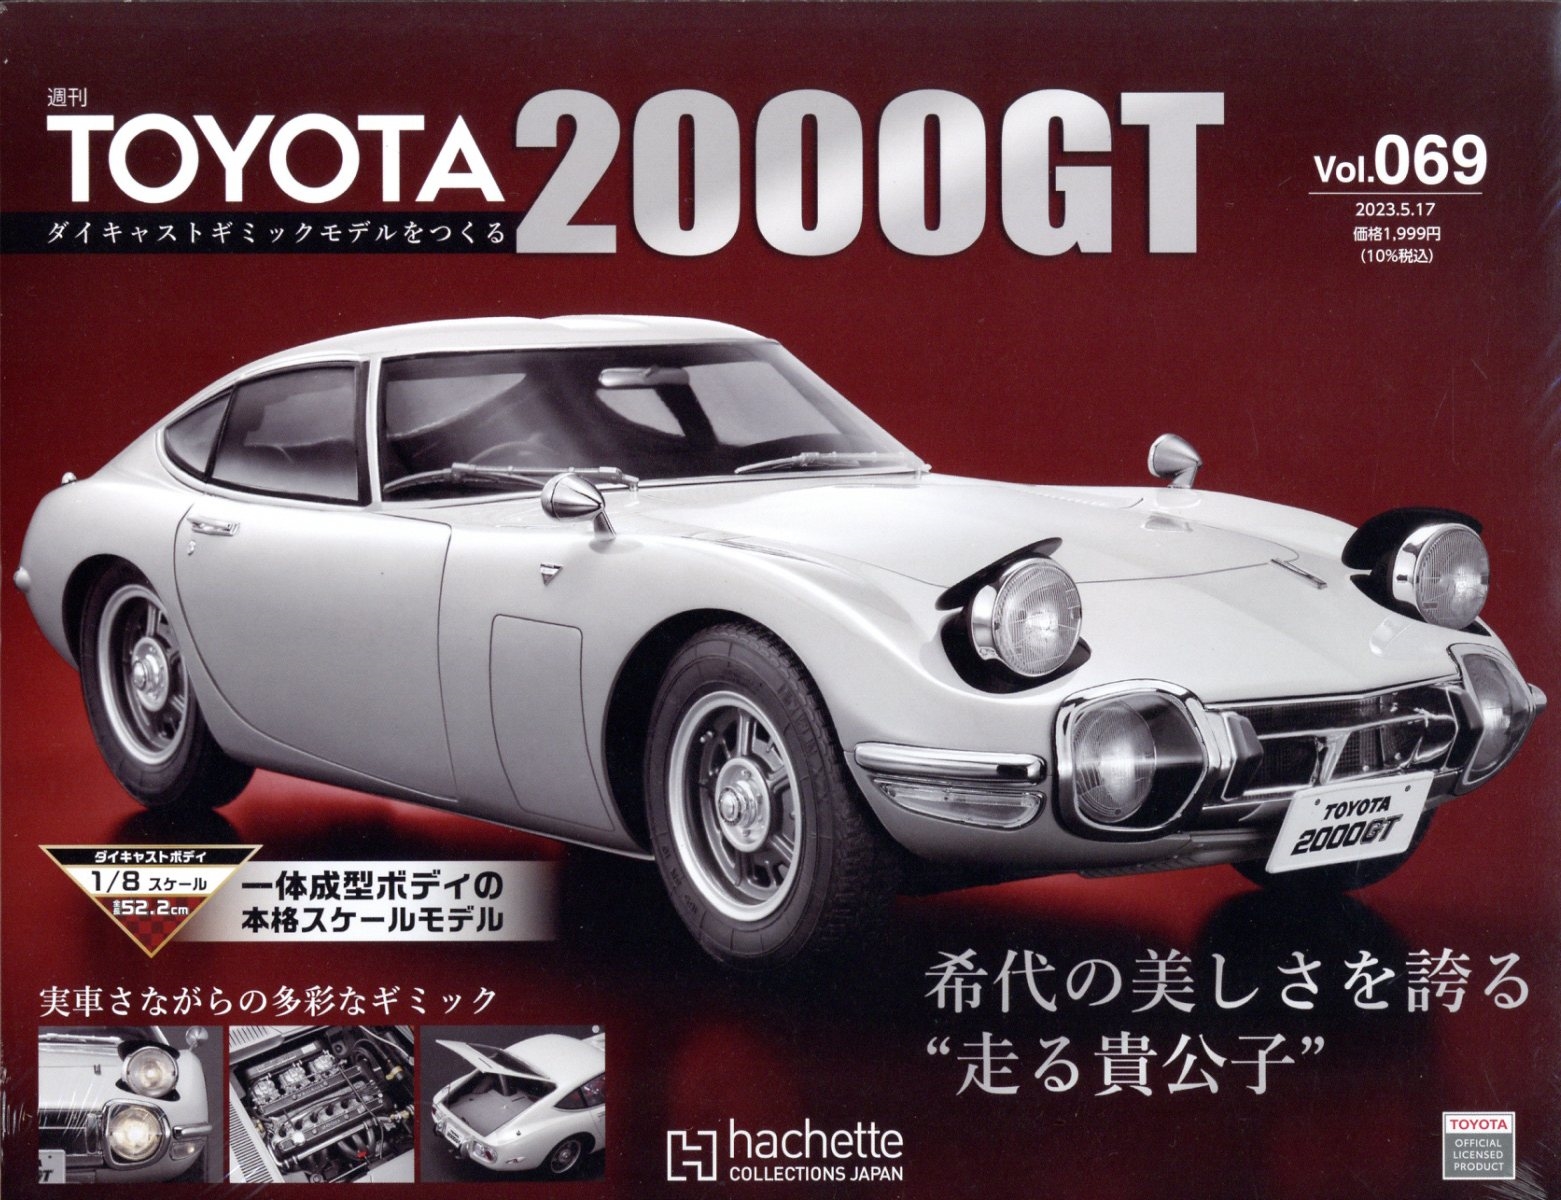 トヨタ2000GT / パーツカタログ / 2000GT /TOYOTA - atlacasaazul.com